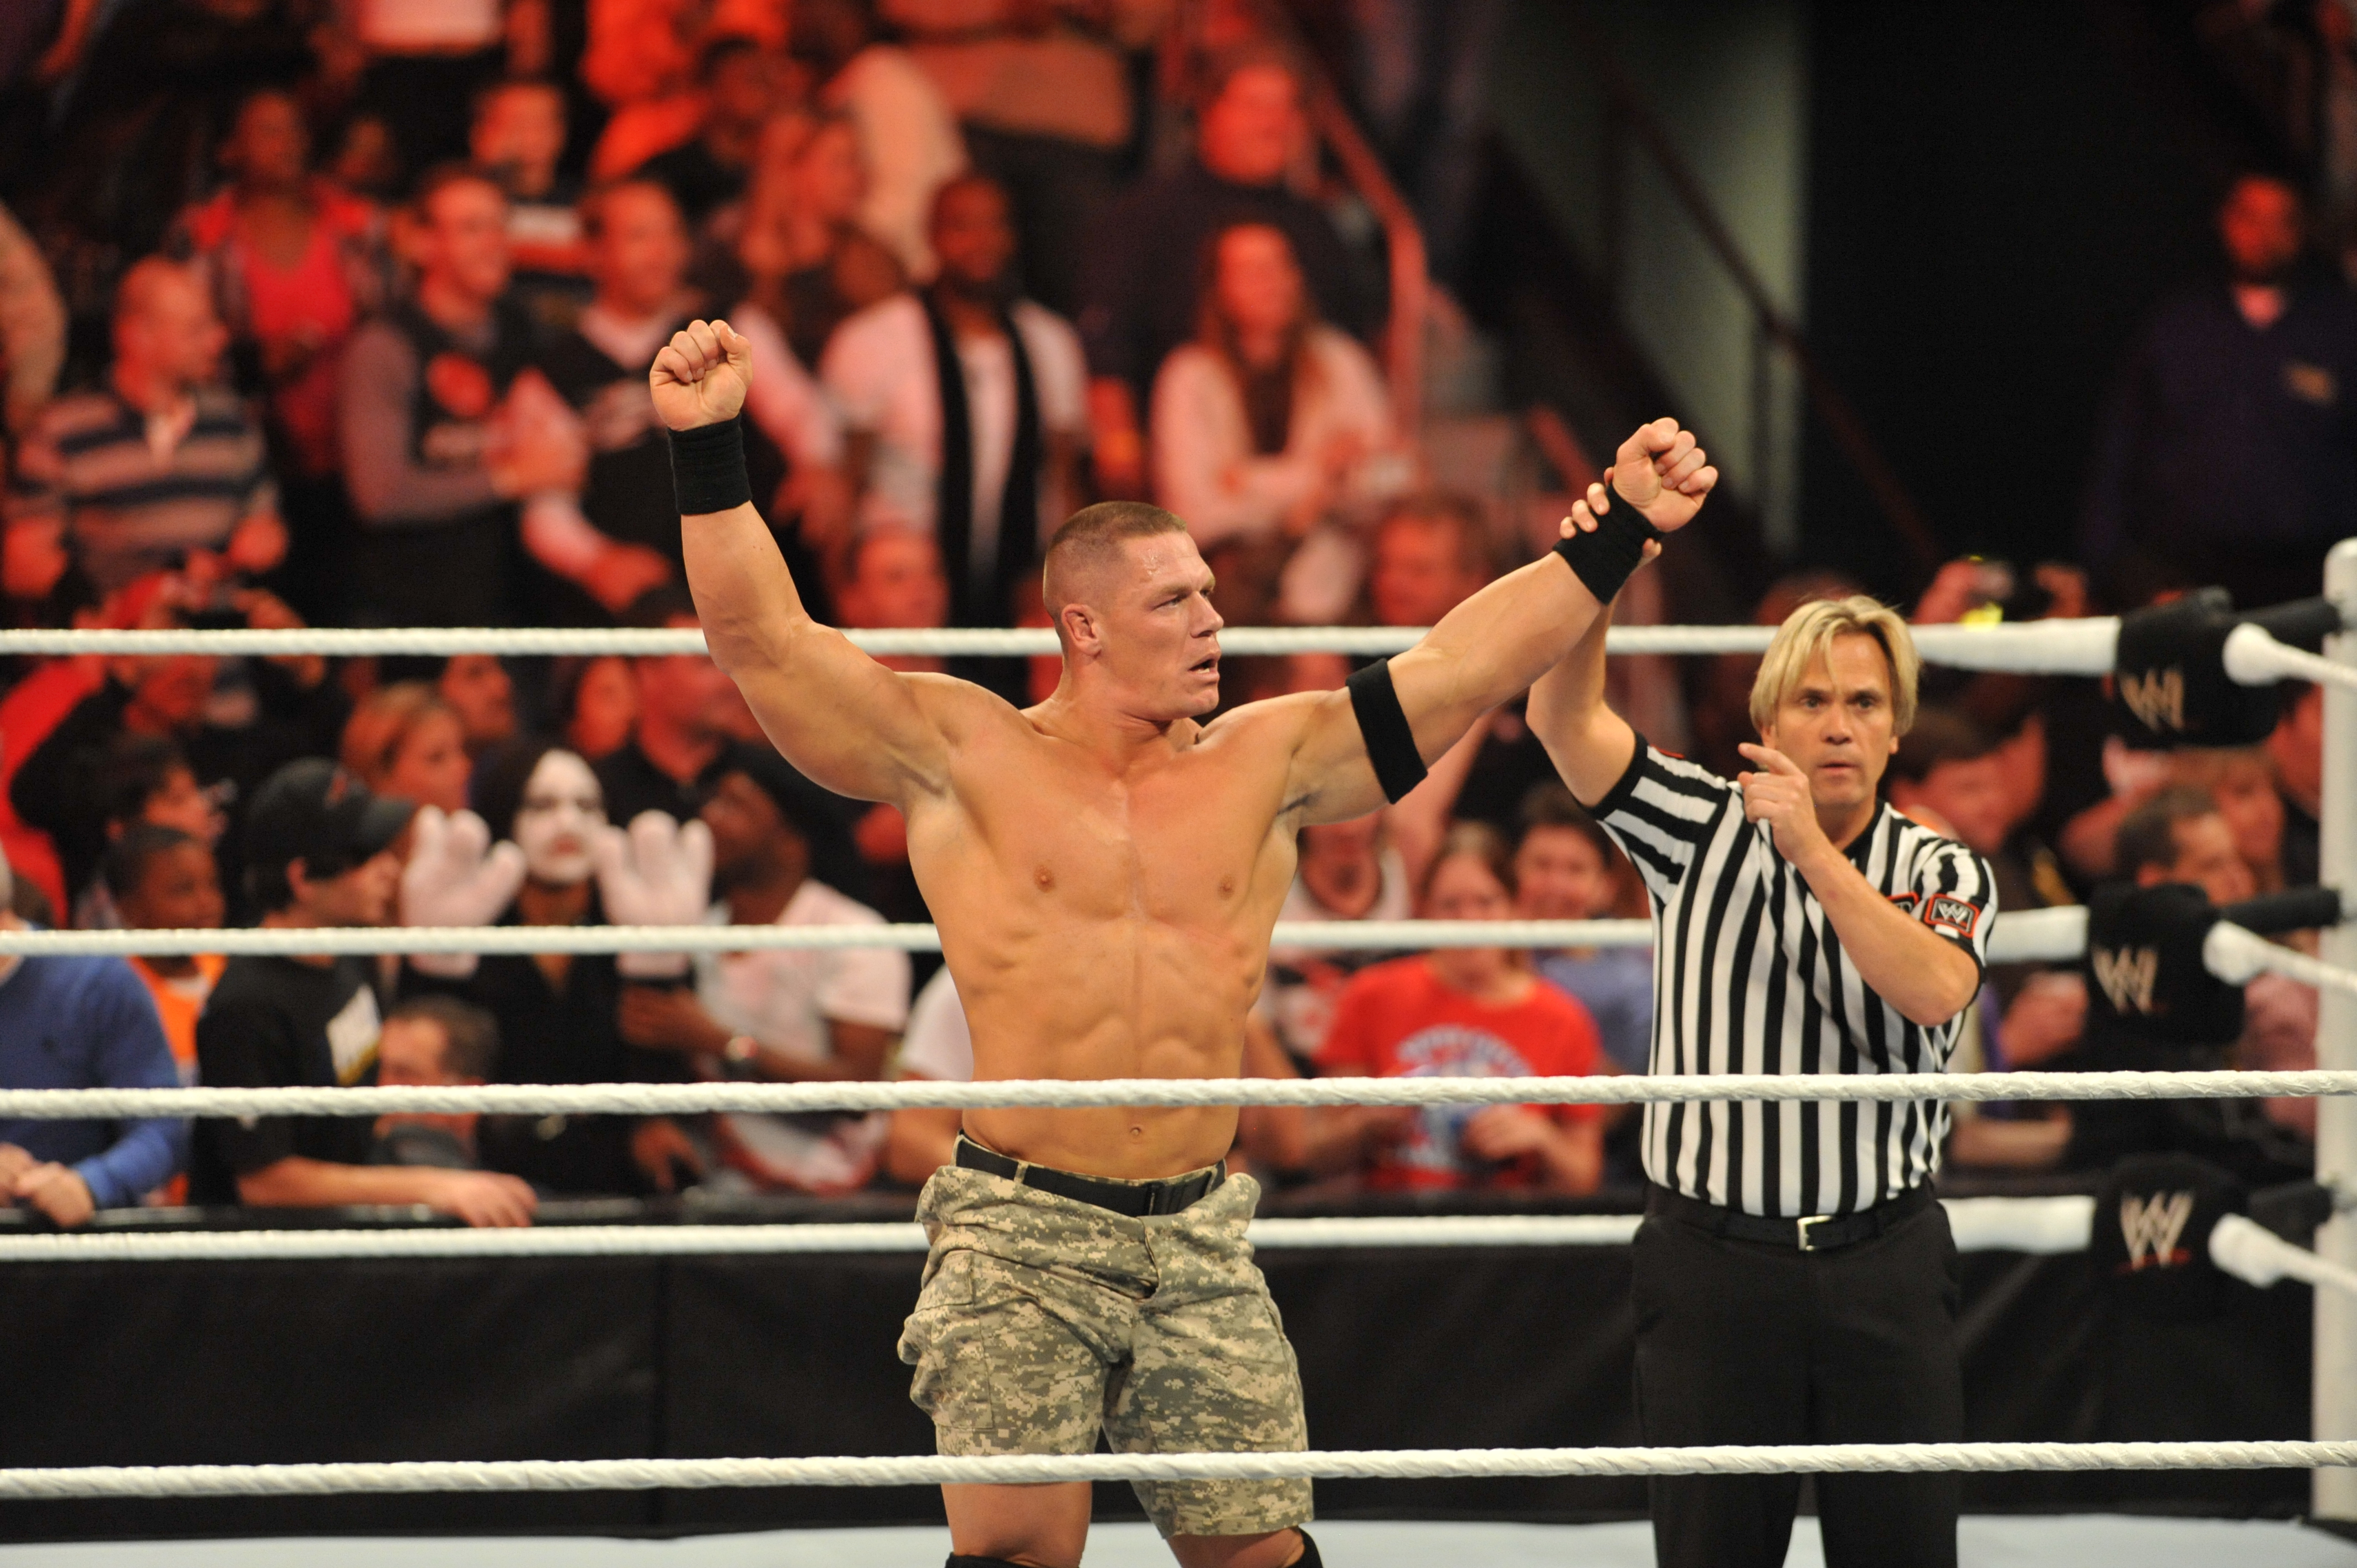 Cena gilt als einer der größten professionellen Wrestler aller Zeiten